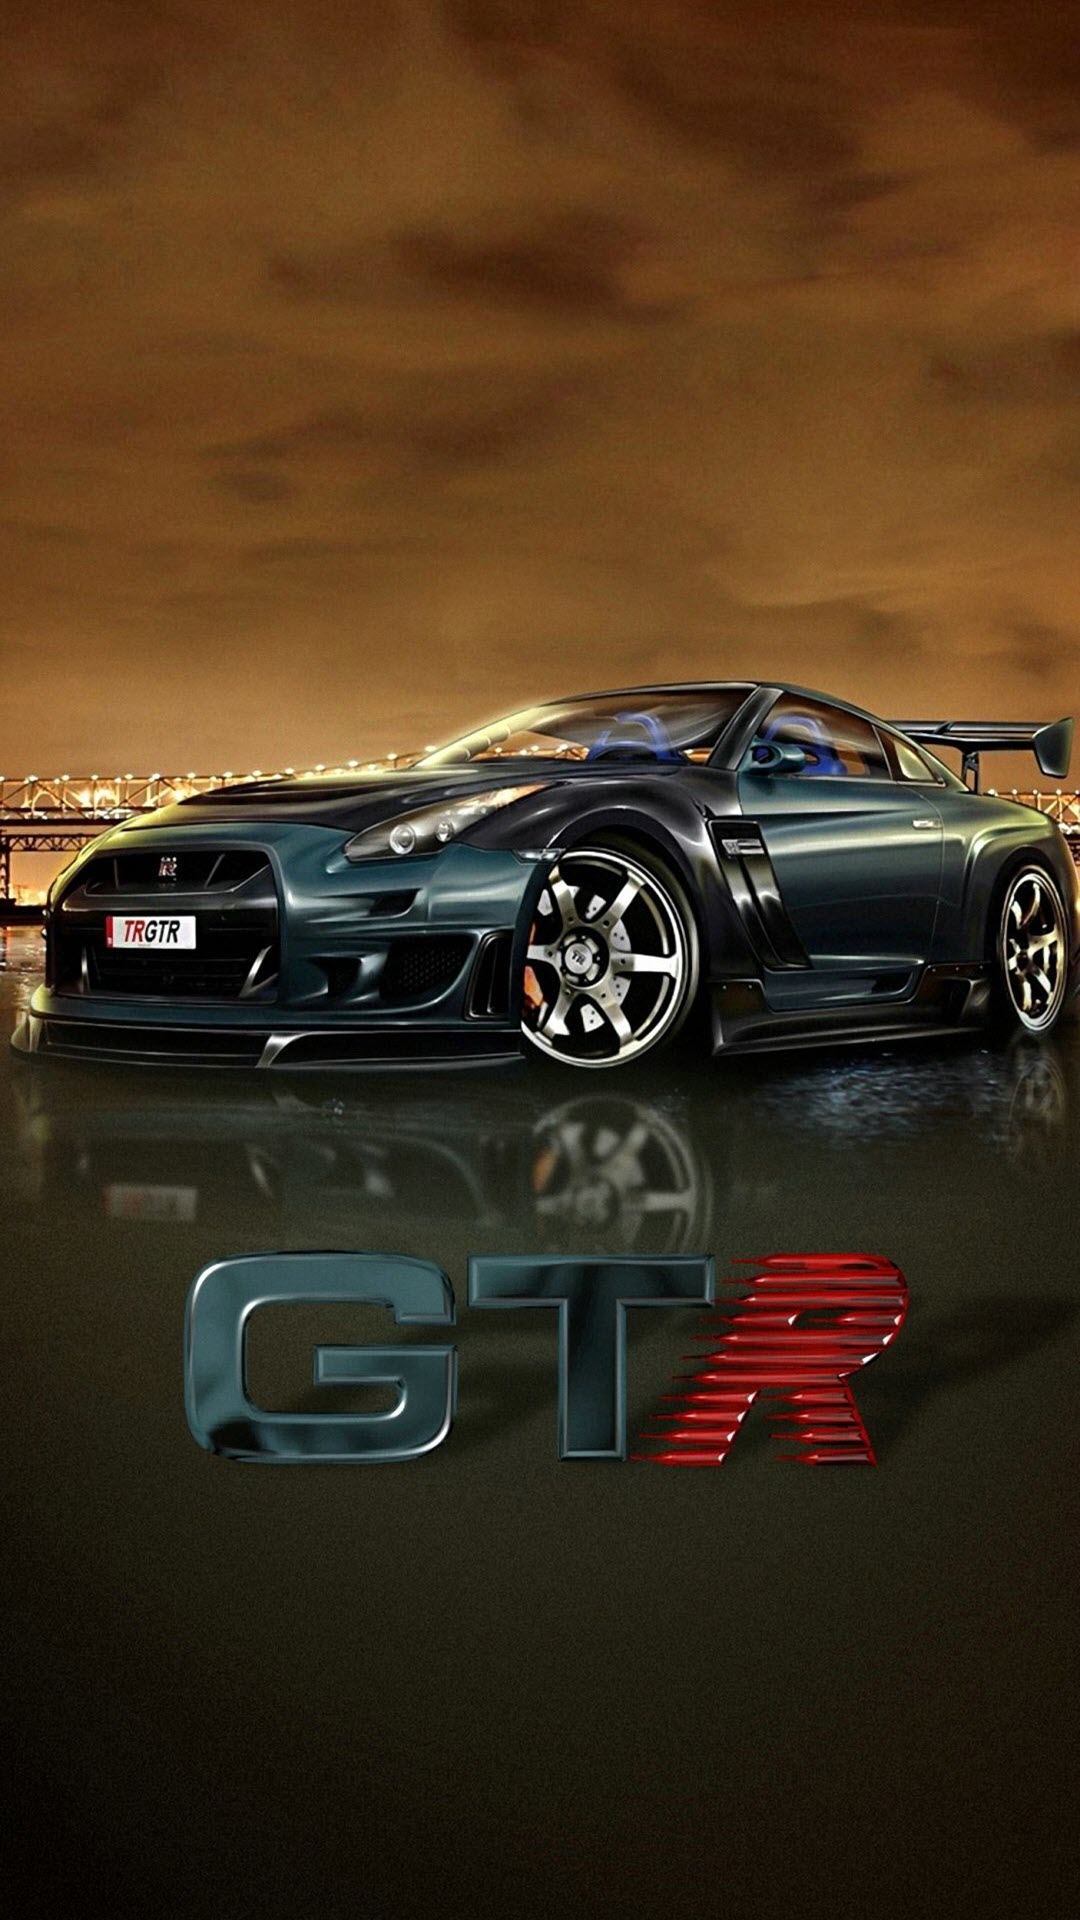 Hình nền siêu xe Nissan GTR Full HD cho iPhone